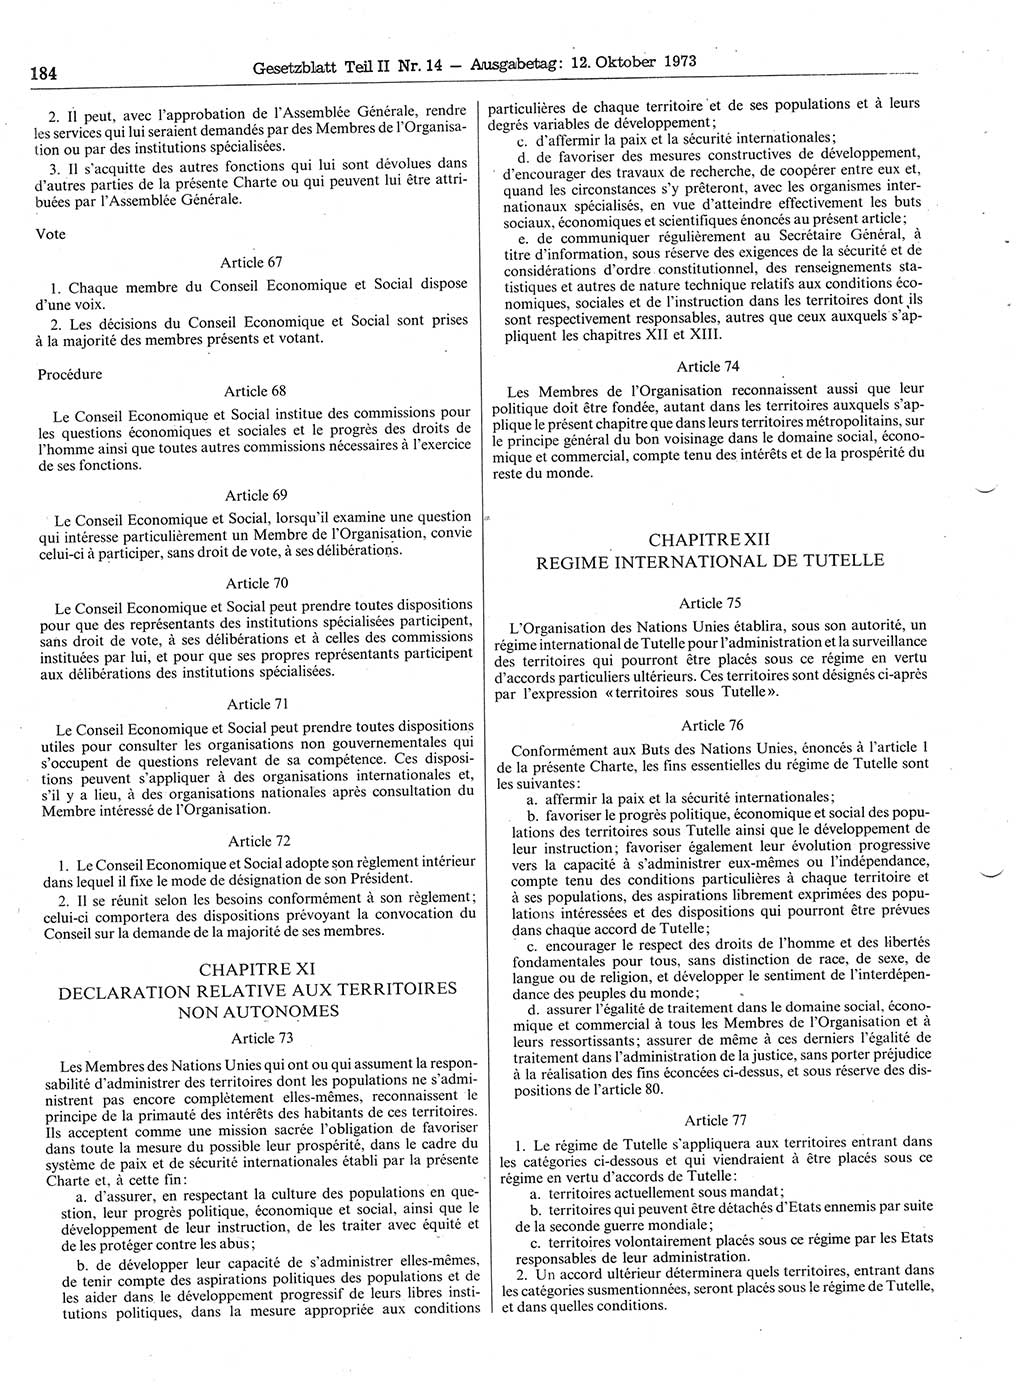 Gesetzblatt (GBl.) der Deutschen Demokratischen Republik (DDR) Teil ⅠⅠ 1973, Seite 184 (GBl. DDR ⅠⅠ 1973, S. 184)